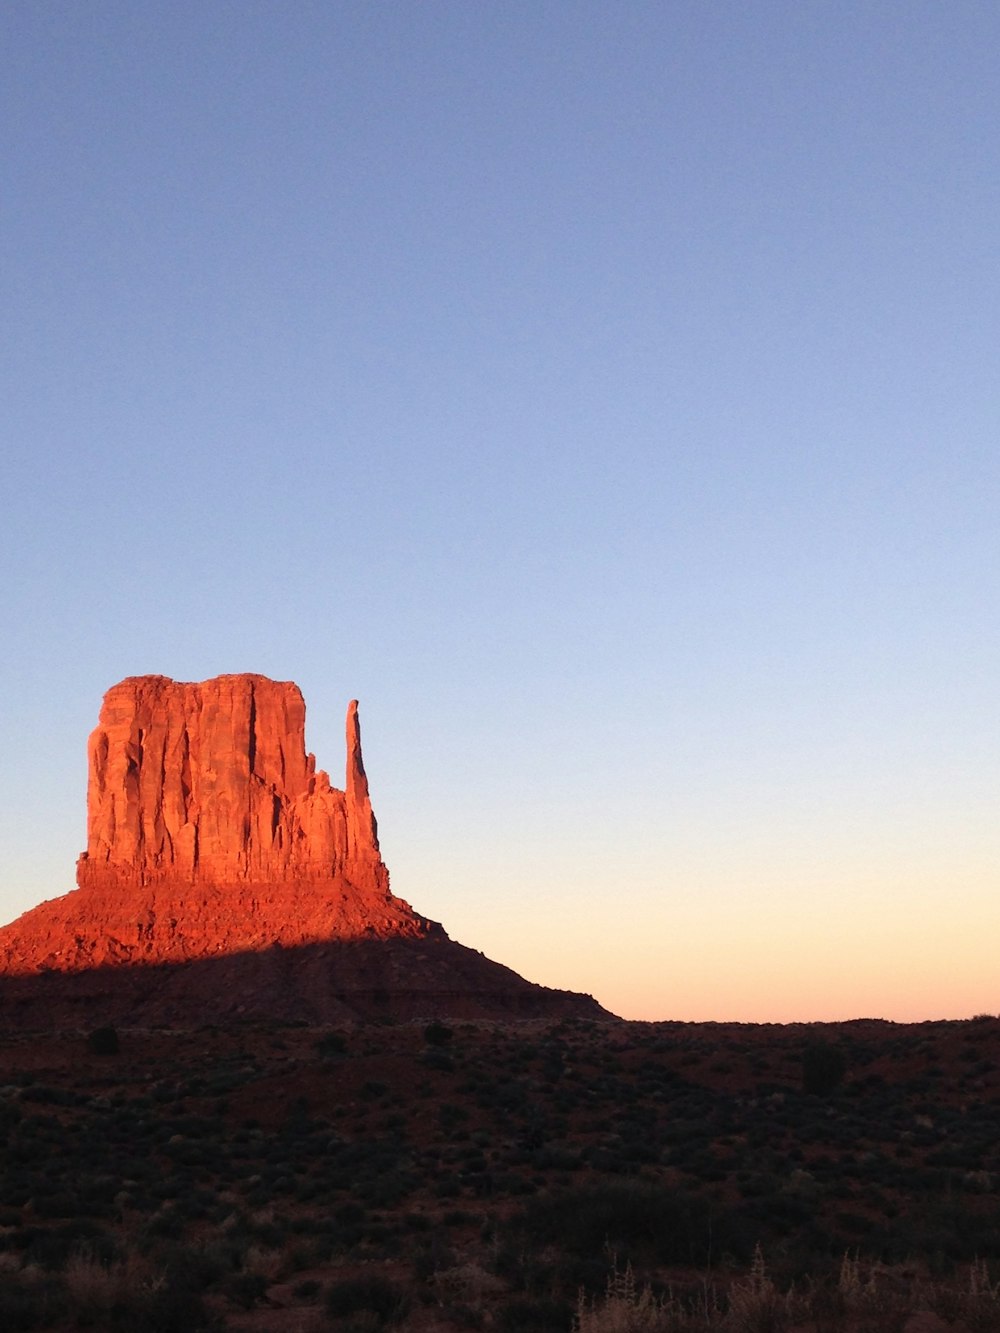 uma alta formação rochosa vermelha no meio de um deserto